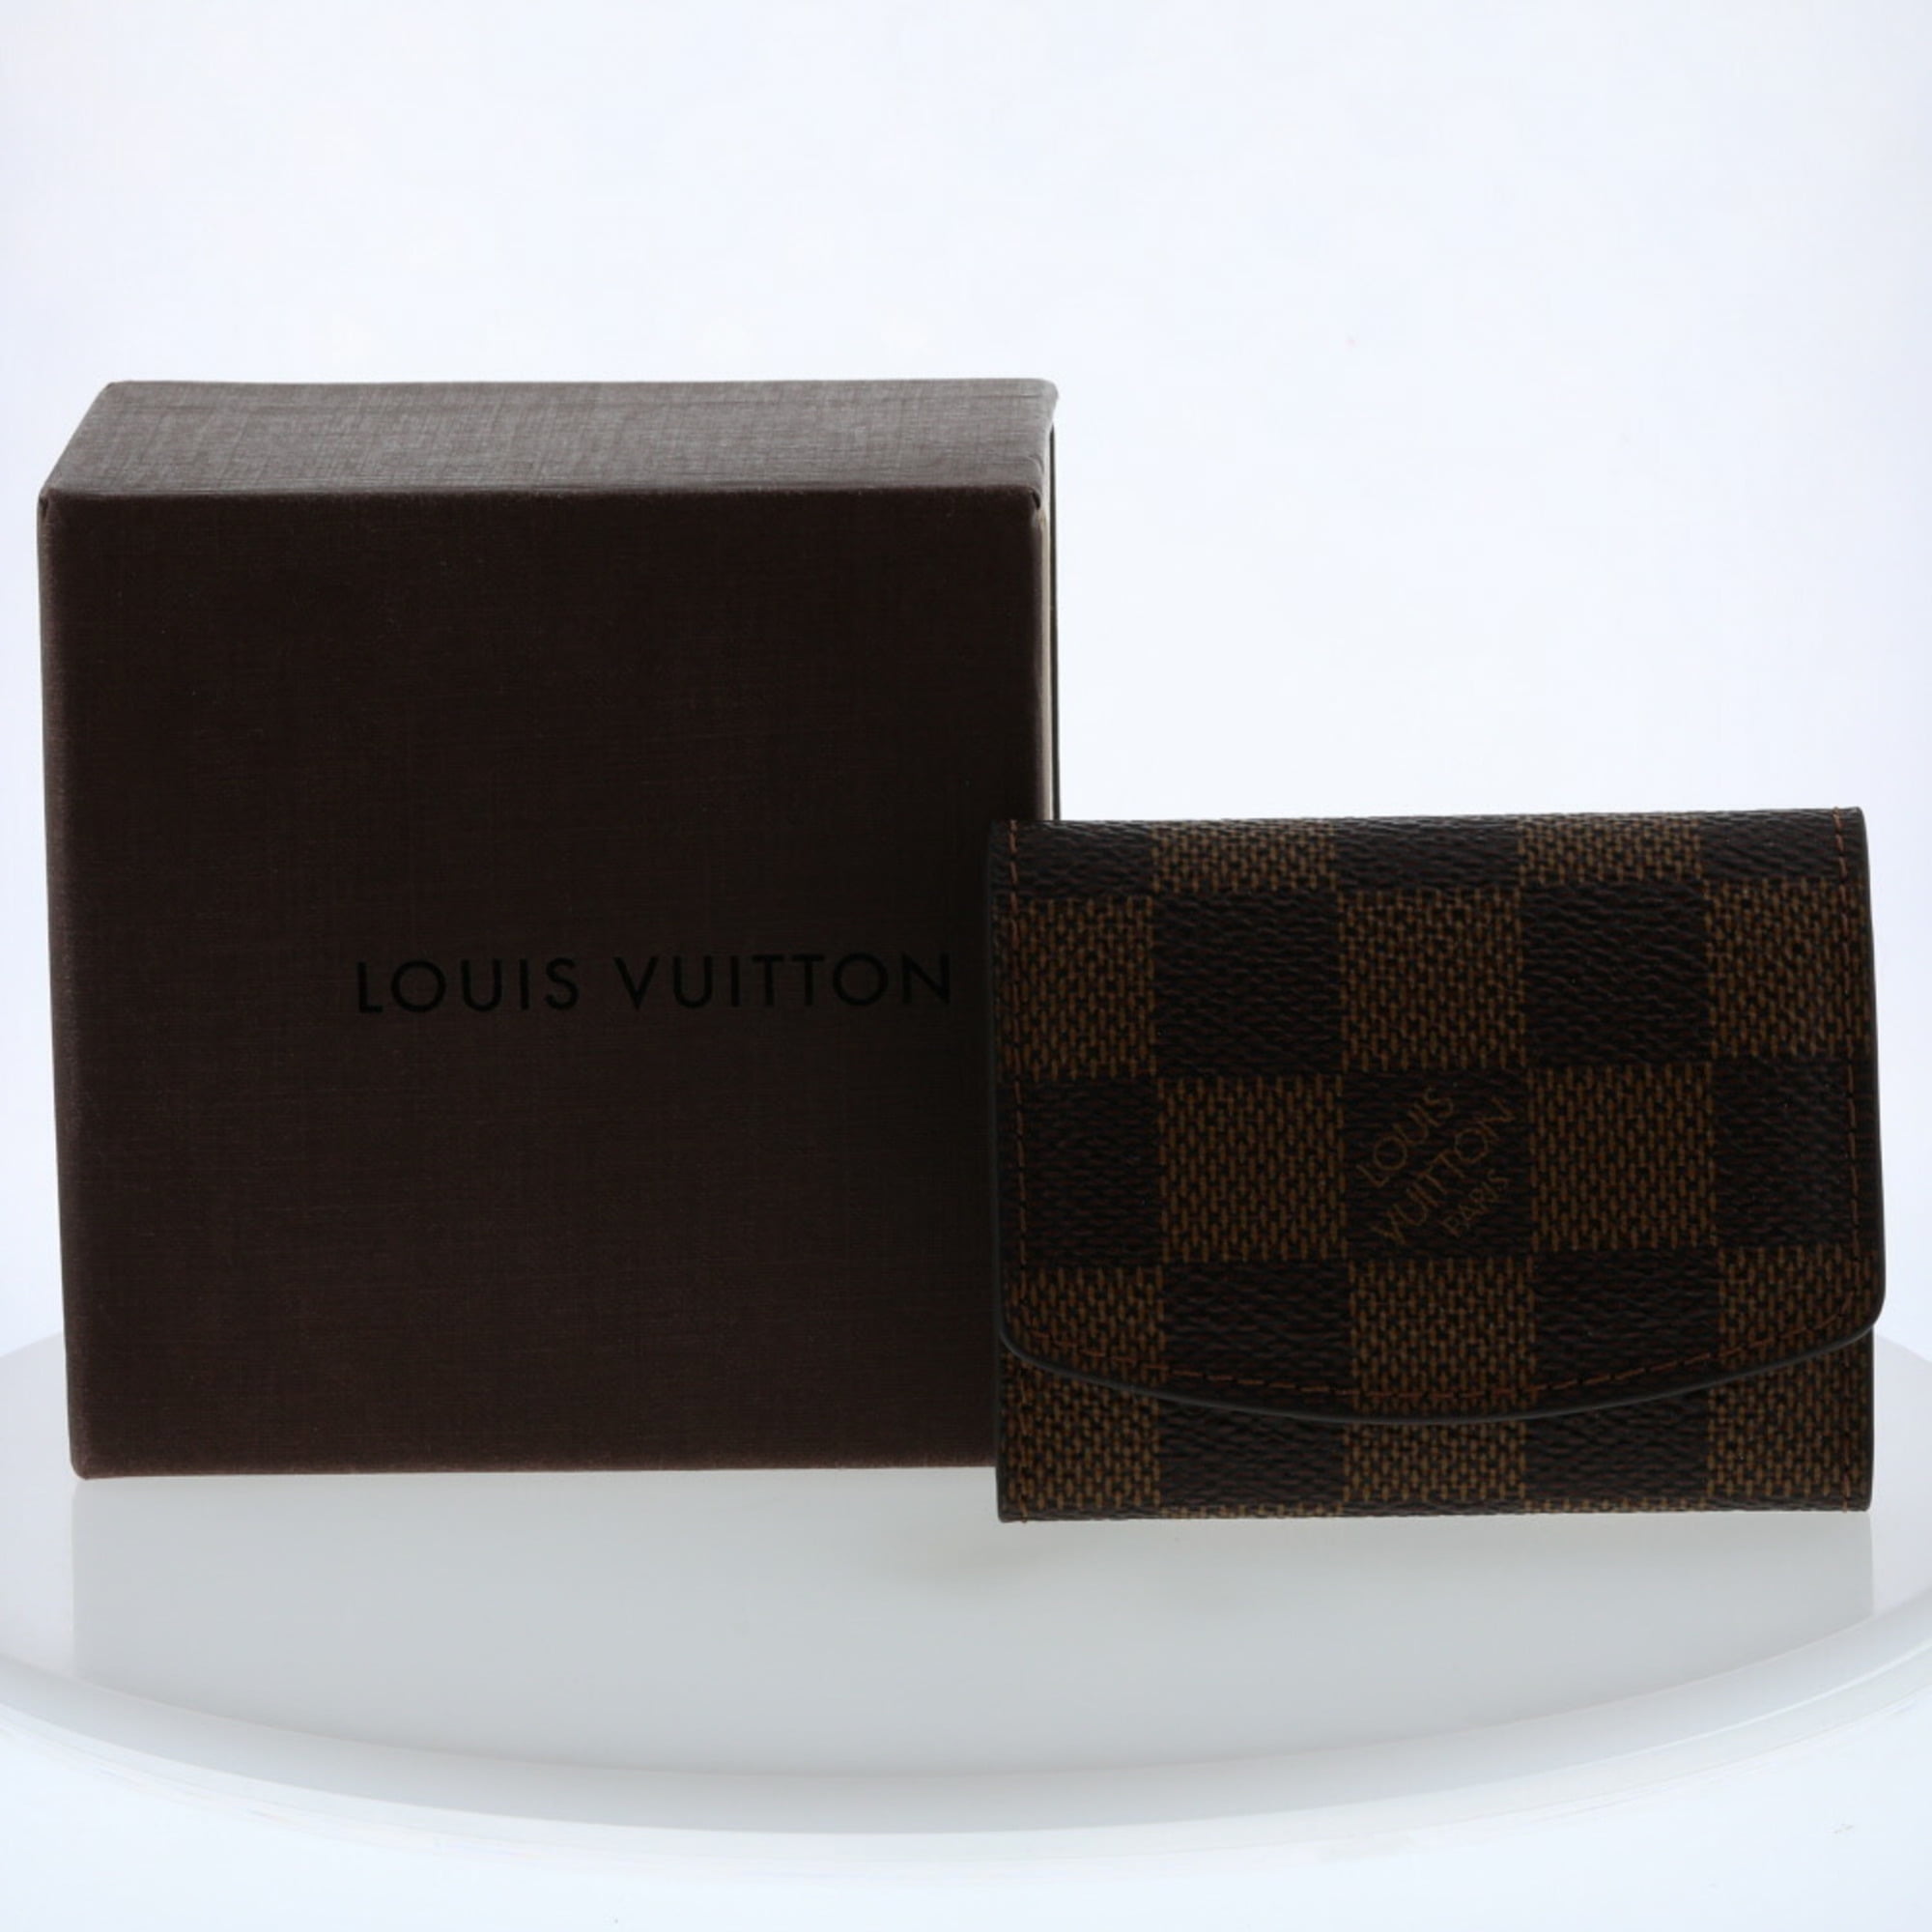 Louis Vuitton Cufflinks Bouton de Manchette Fleur Silver Black Monogram Flower M64581 925 LV - 2 Pieces